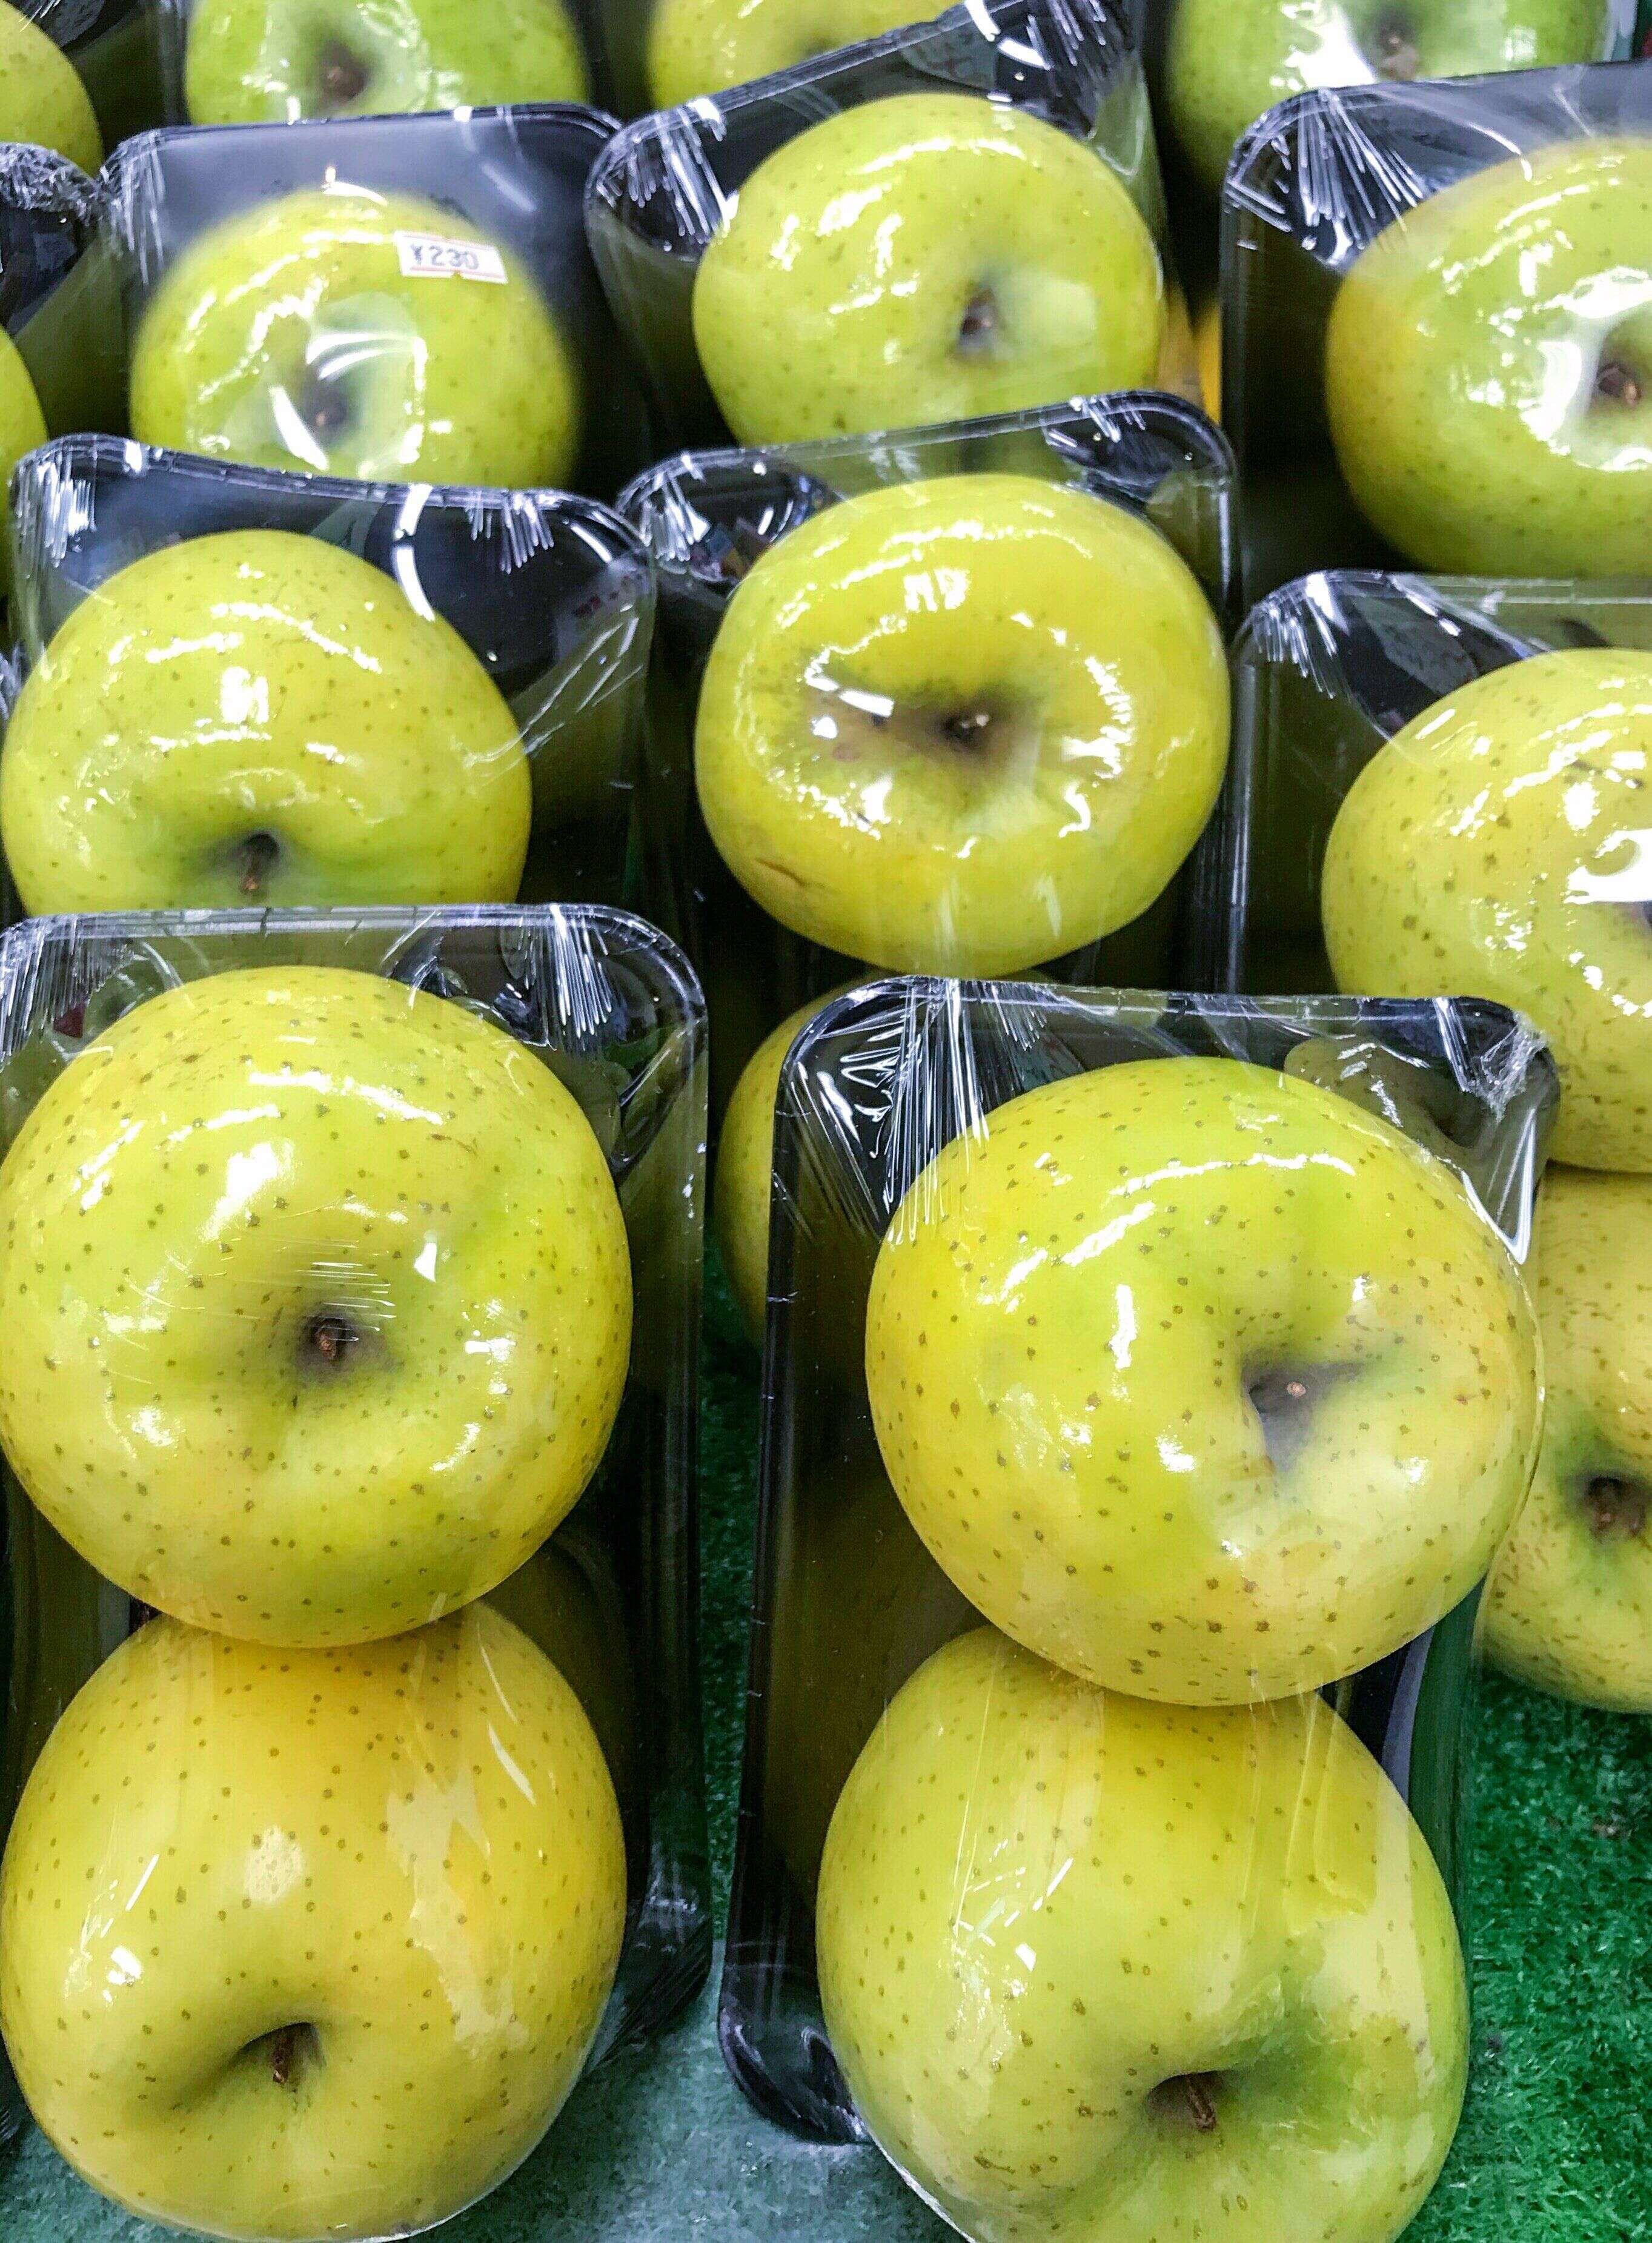 À partir de 2022, les fruits et légumes sous emballage plastique se feront de plus en plus rares dans les rayons de supermarchés.